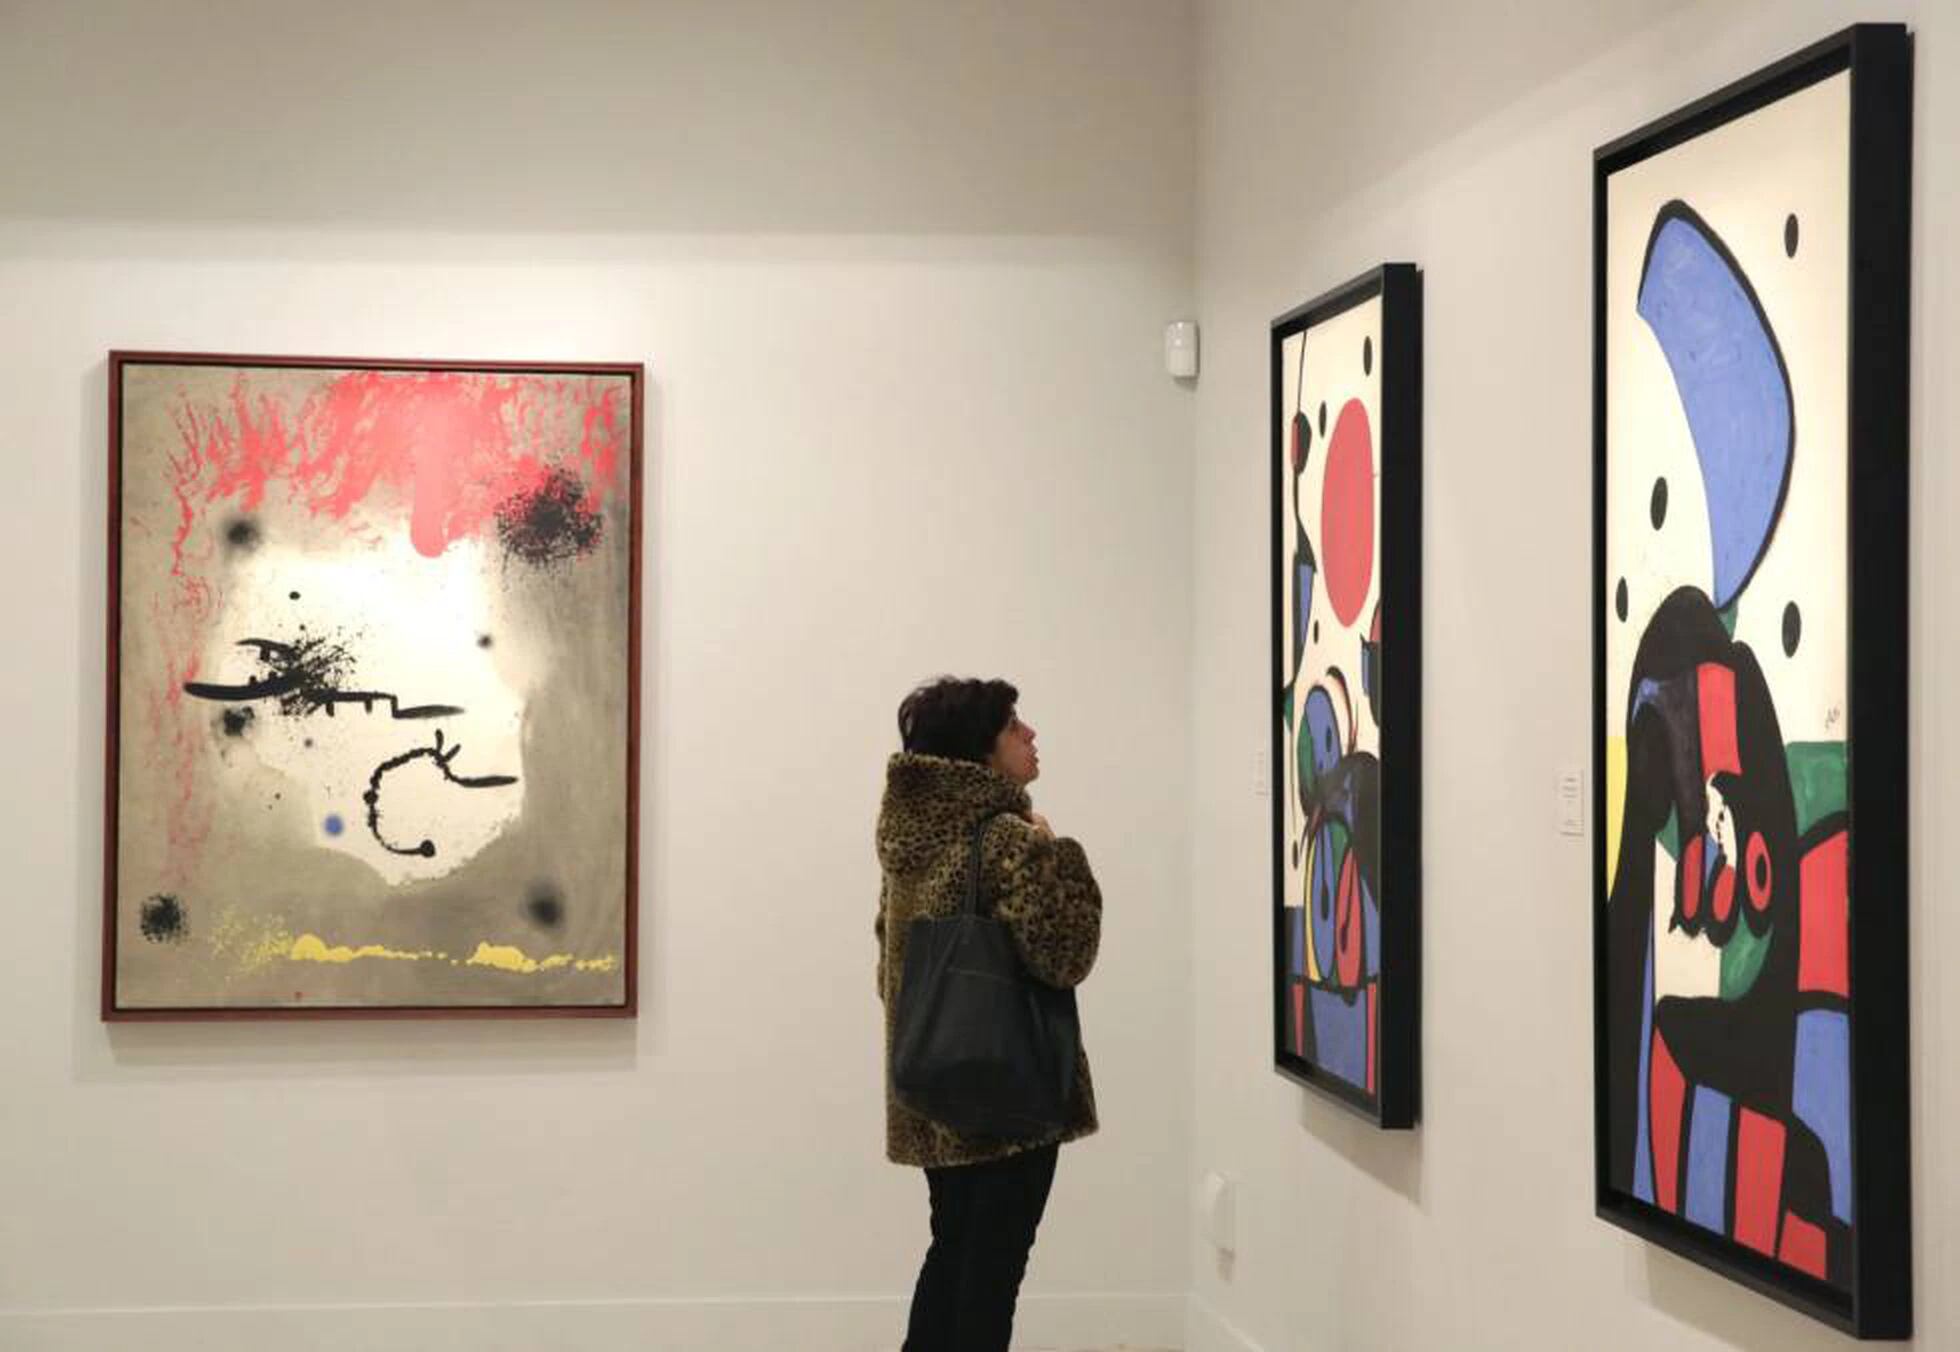 El día de la inauguración en 2016 del Espacio Miró de la Fundación Mapfre en Madrid, con tres de las obras que podían ver allí.